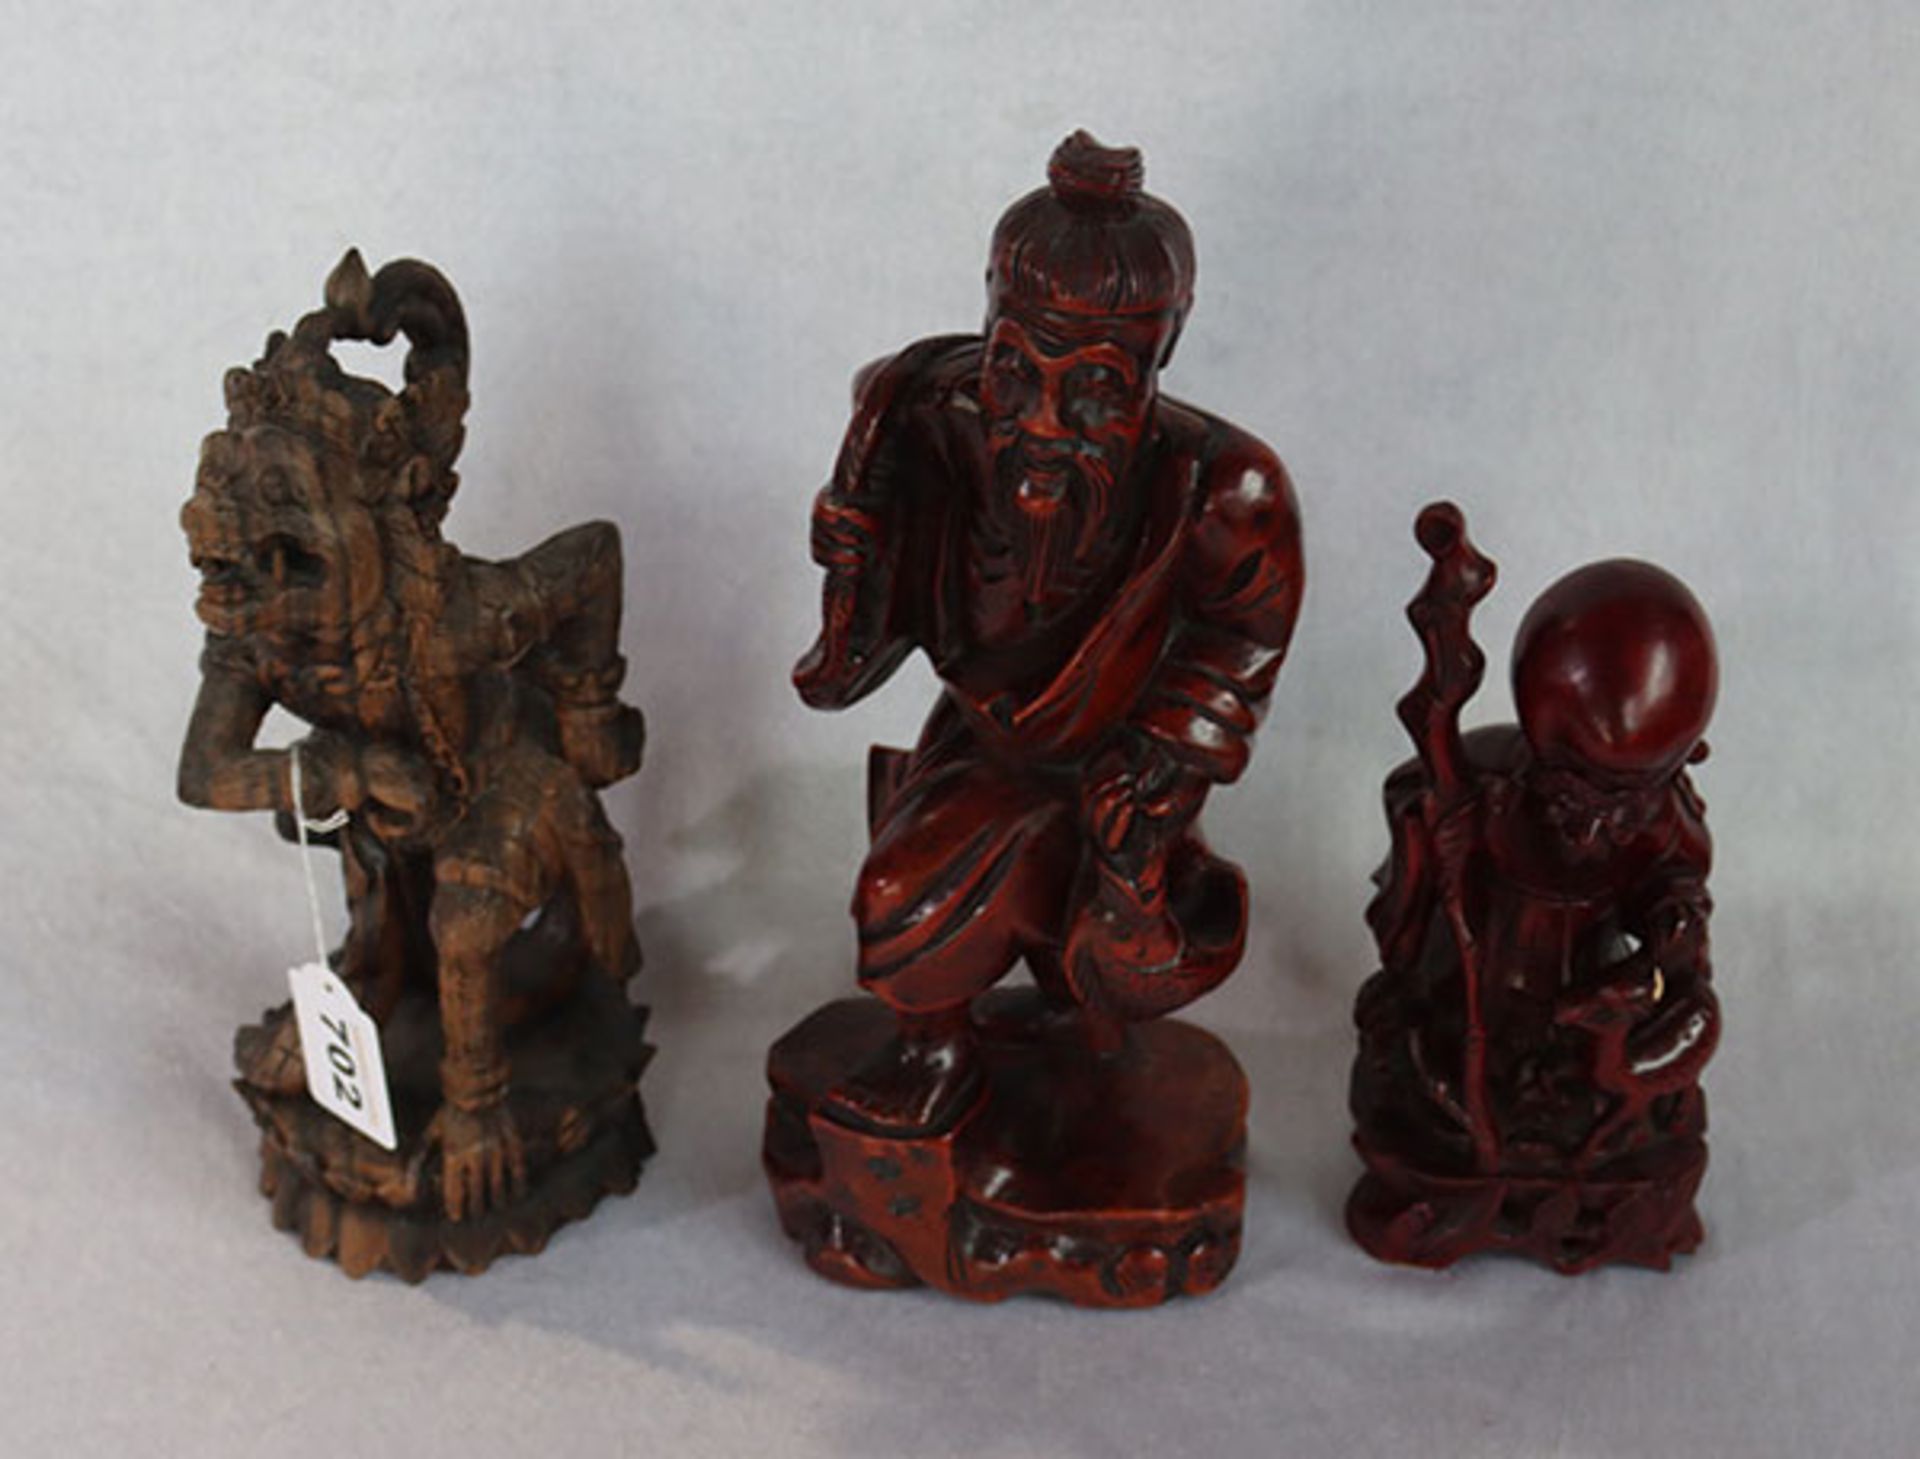 3 asiatische Holzfiguren 'Ritualfigur', Bali, H 26 cm, und 2 chinesische Figuren, eine beschädigt, H